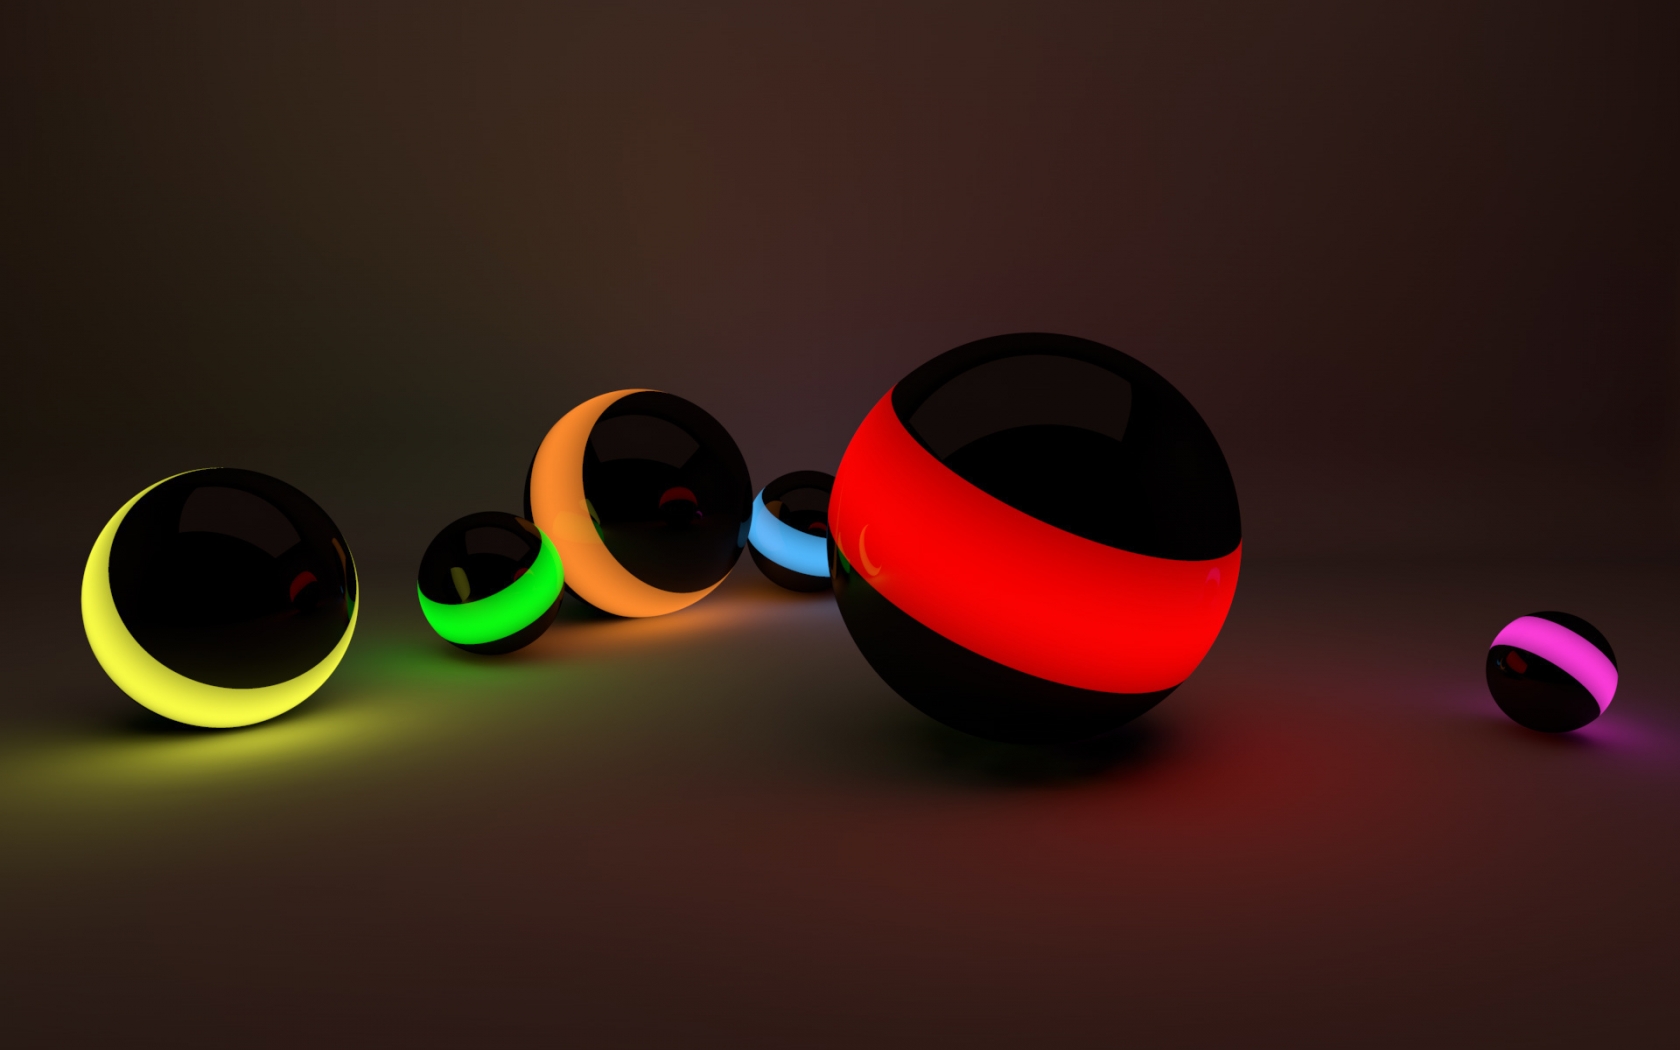 Balls Lights for 1680 x 1050 widescreen resolution